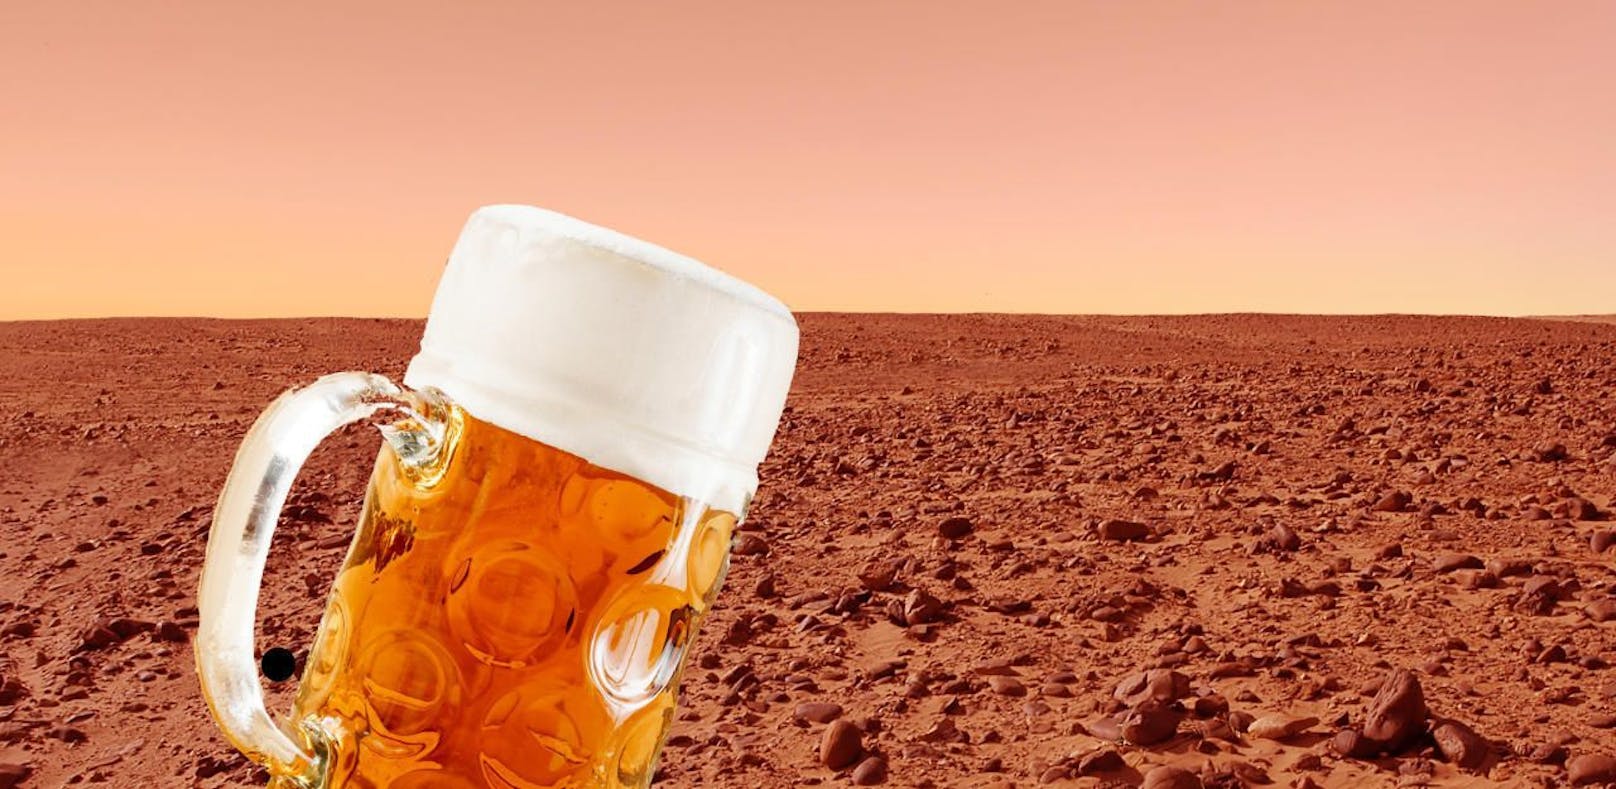 Gibt es bald das erste Bier vom Mars?